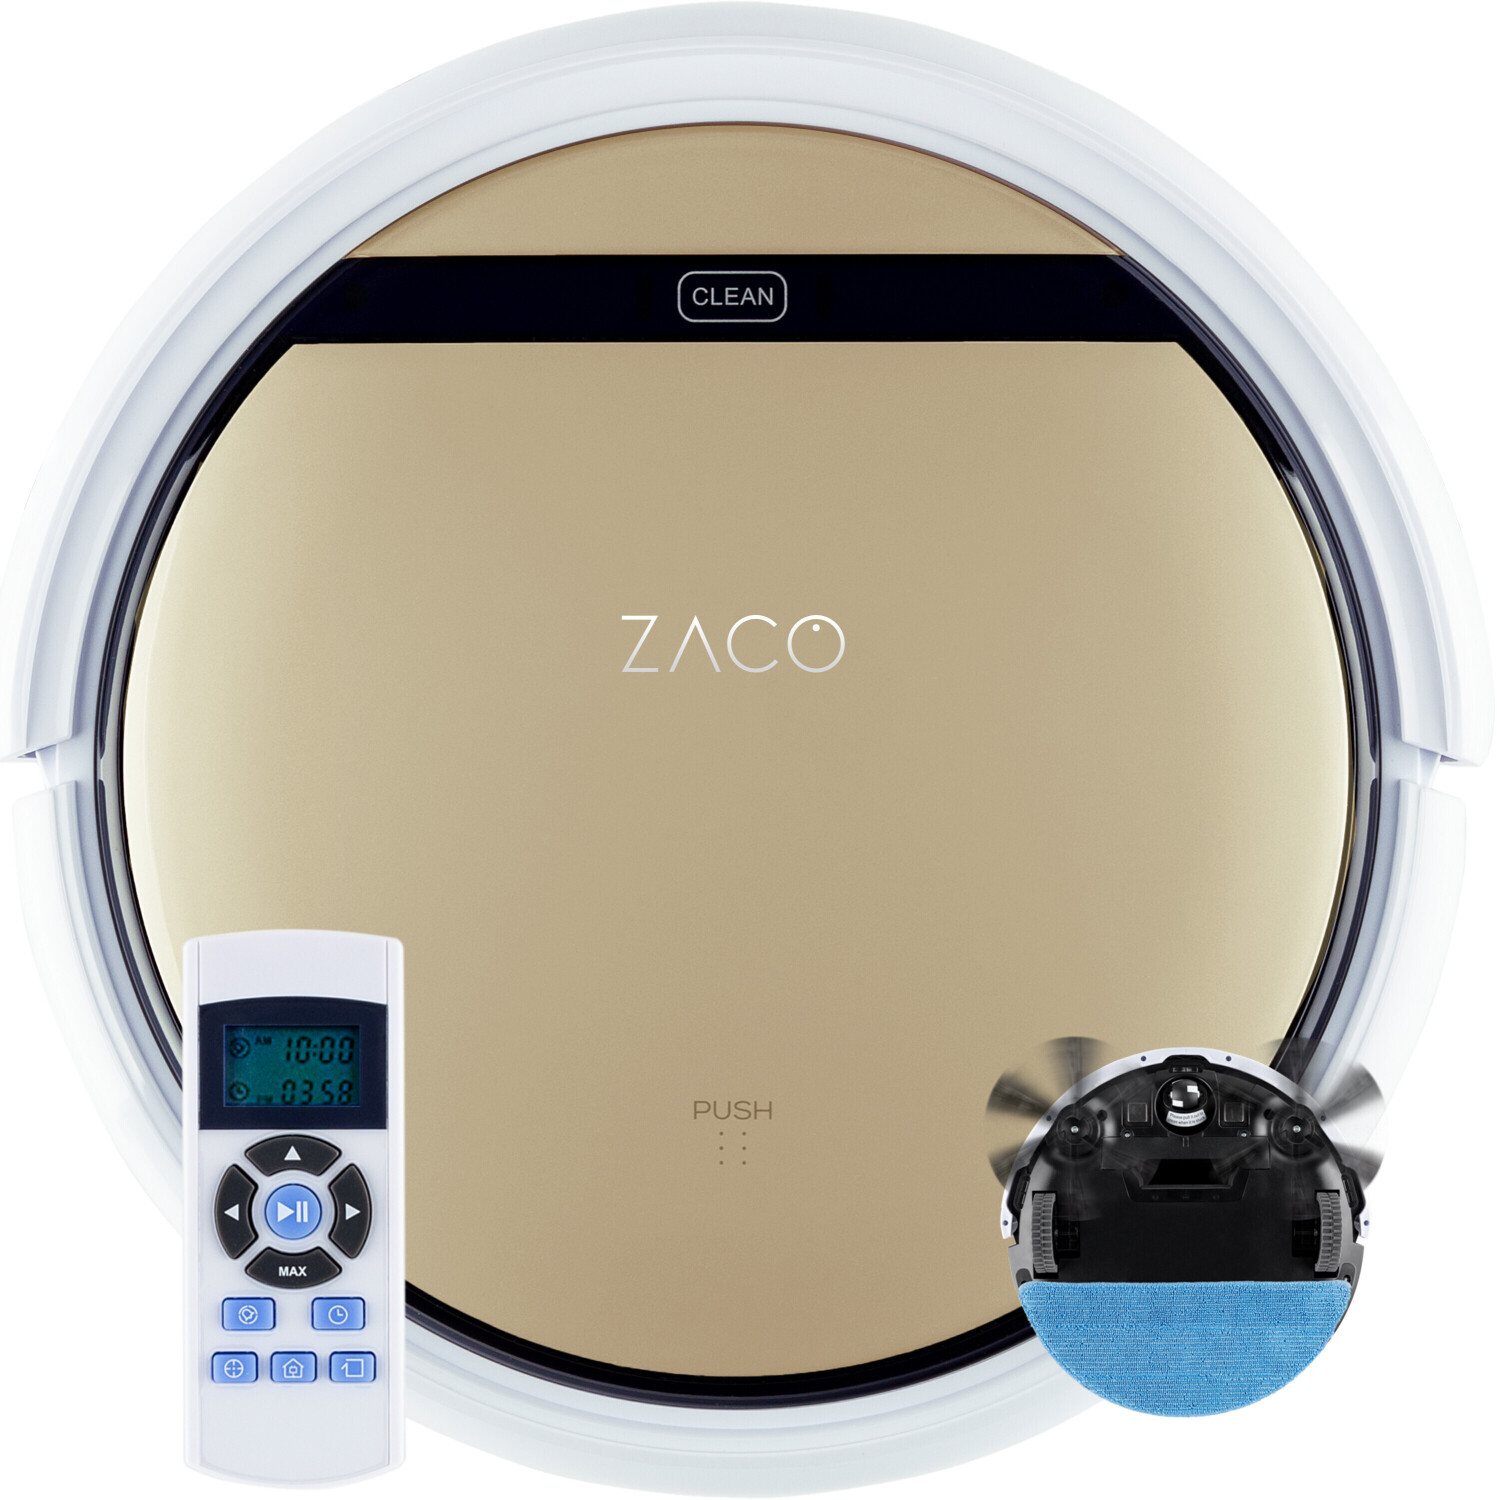 ZACO V5sPro Aspirateur robot laveur silencieux avec télecommande, Auto  charge, 4 modes de nettoyage, sans fils pour poils animaux tapis parquet